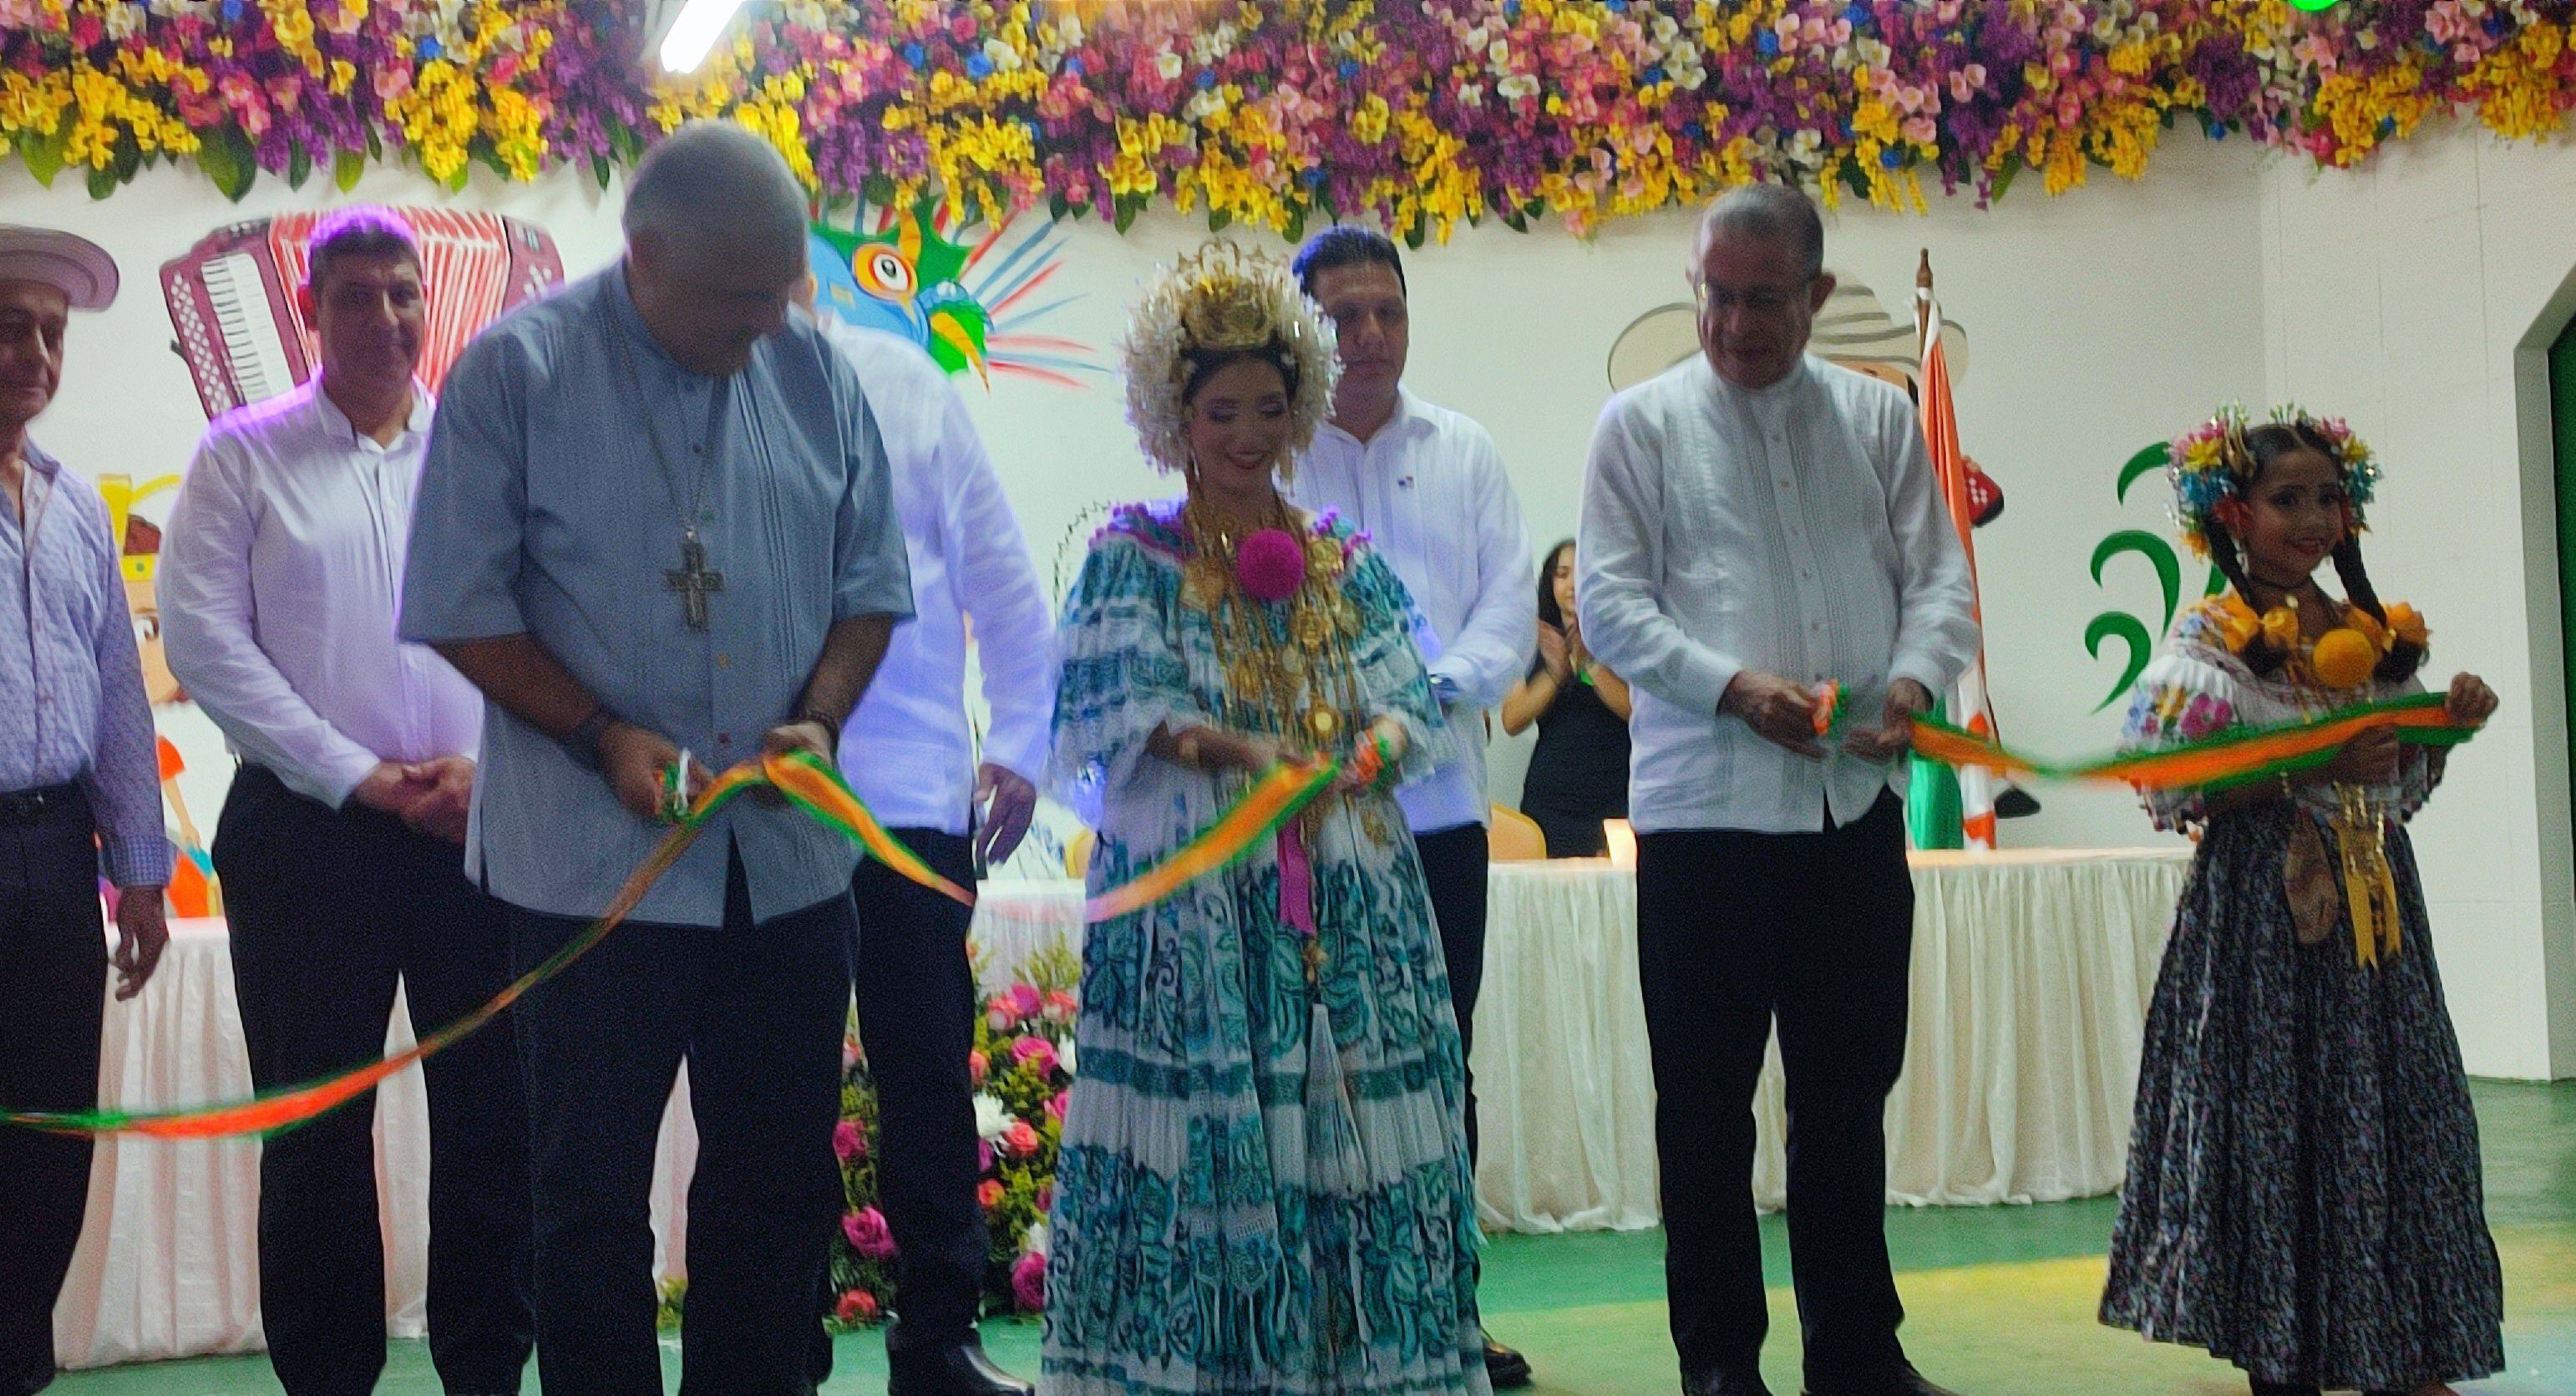 El obispo de la Diócesis de Chitré Monseñor Rafael Valdivieso Miranda, inauguró el evento ferial. Vielka Corro